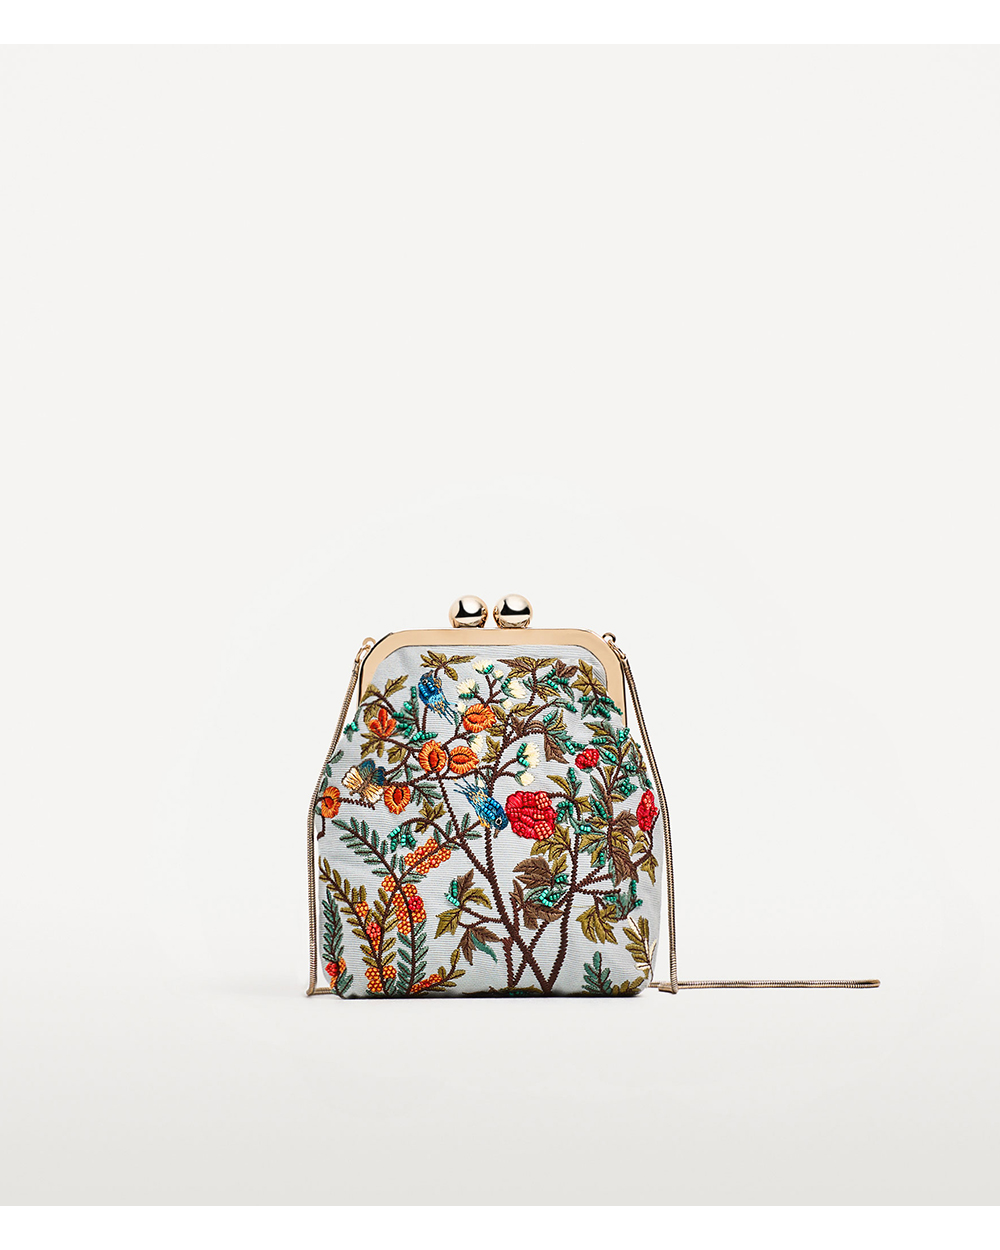 Zara bag, $39.90 USD